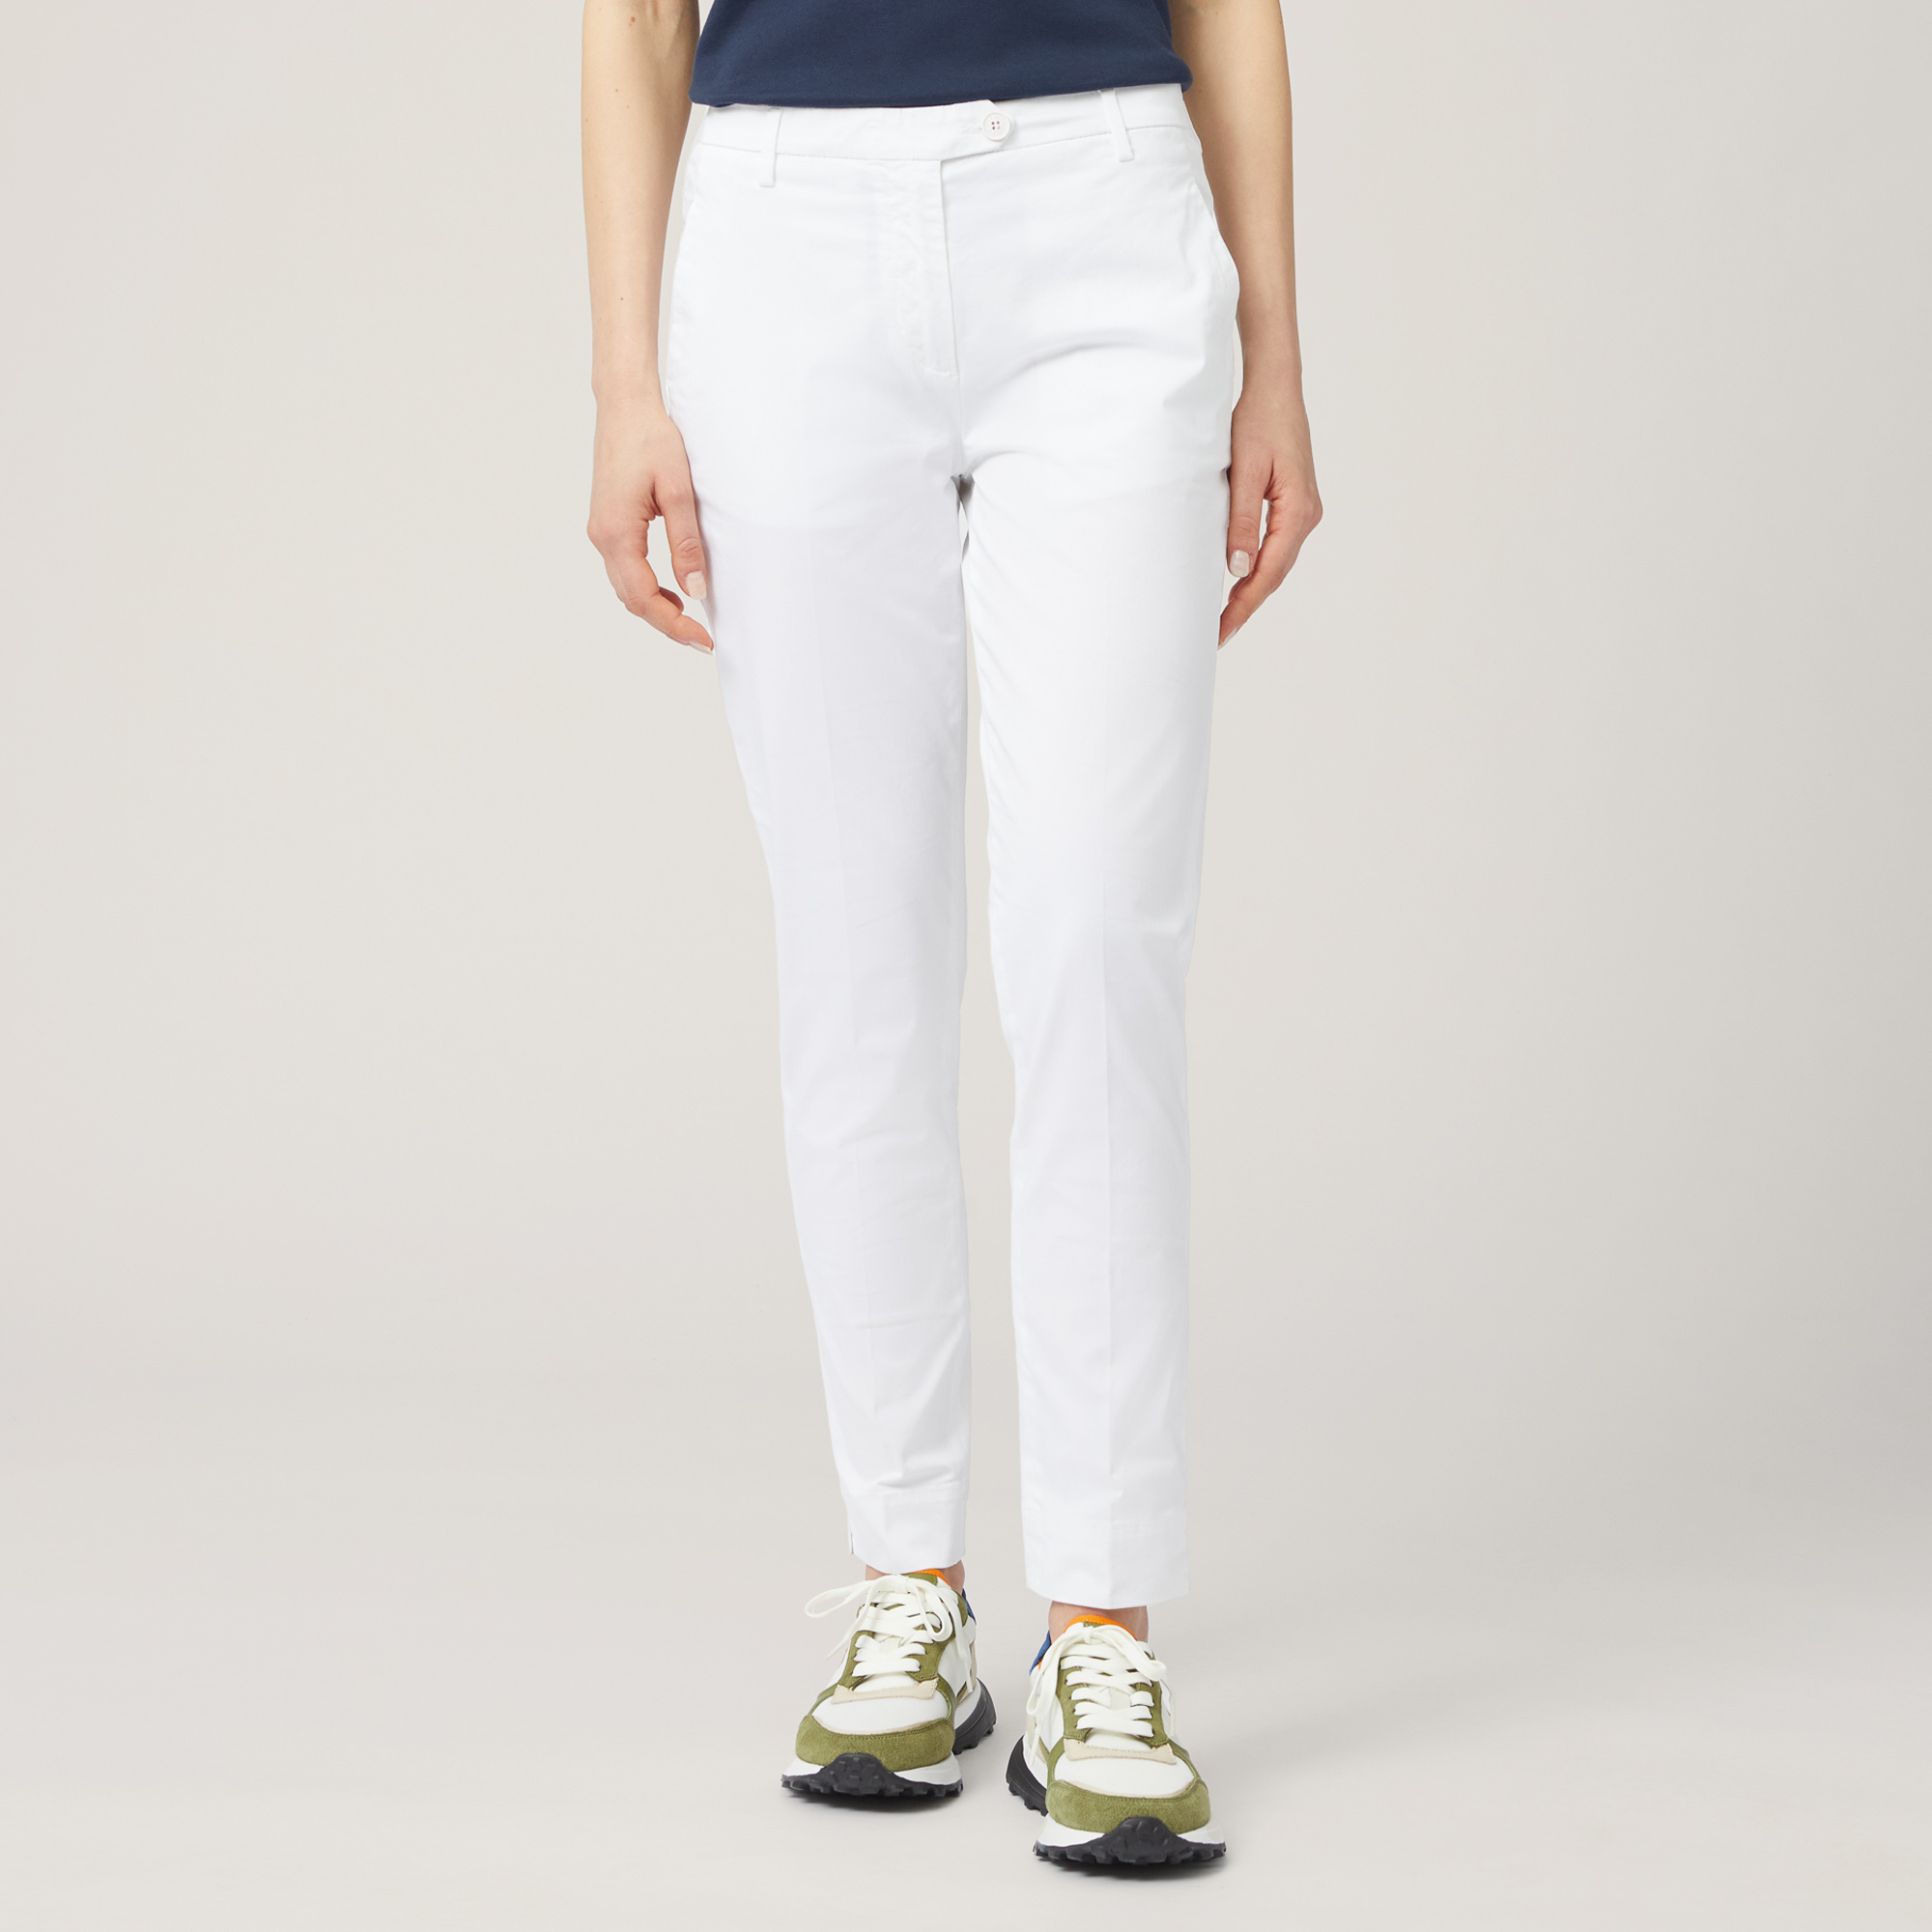 Pantaloni Chino In Raso, Bianco, large image number 0